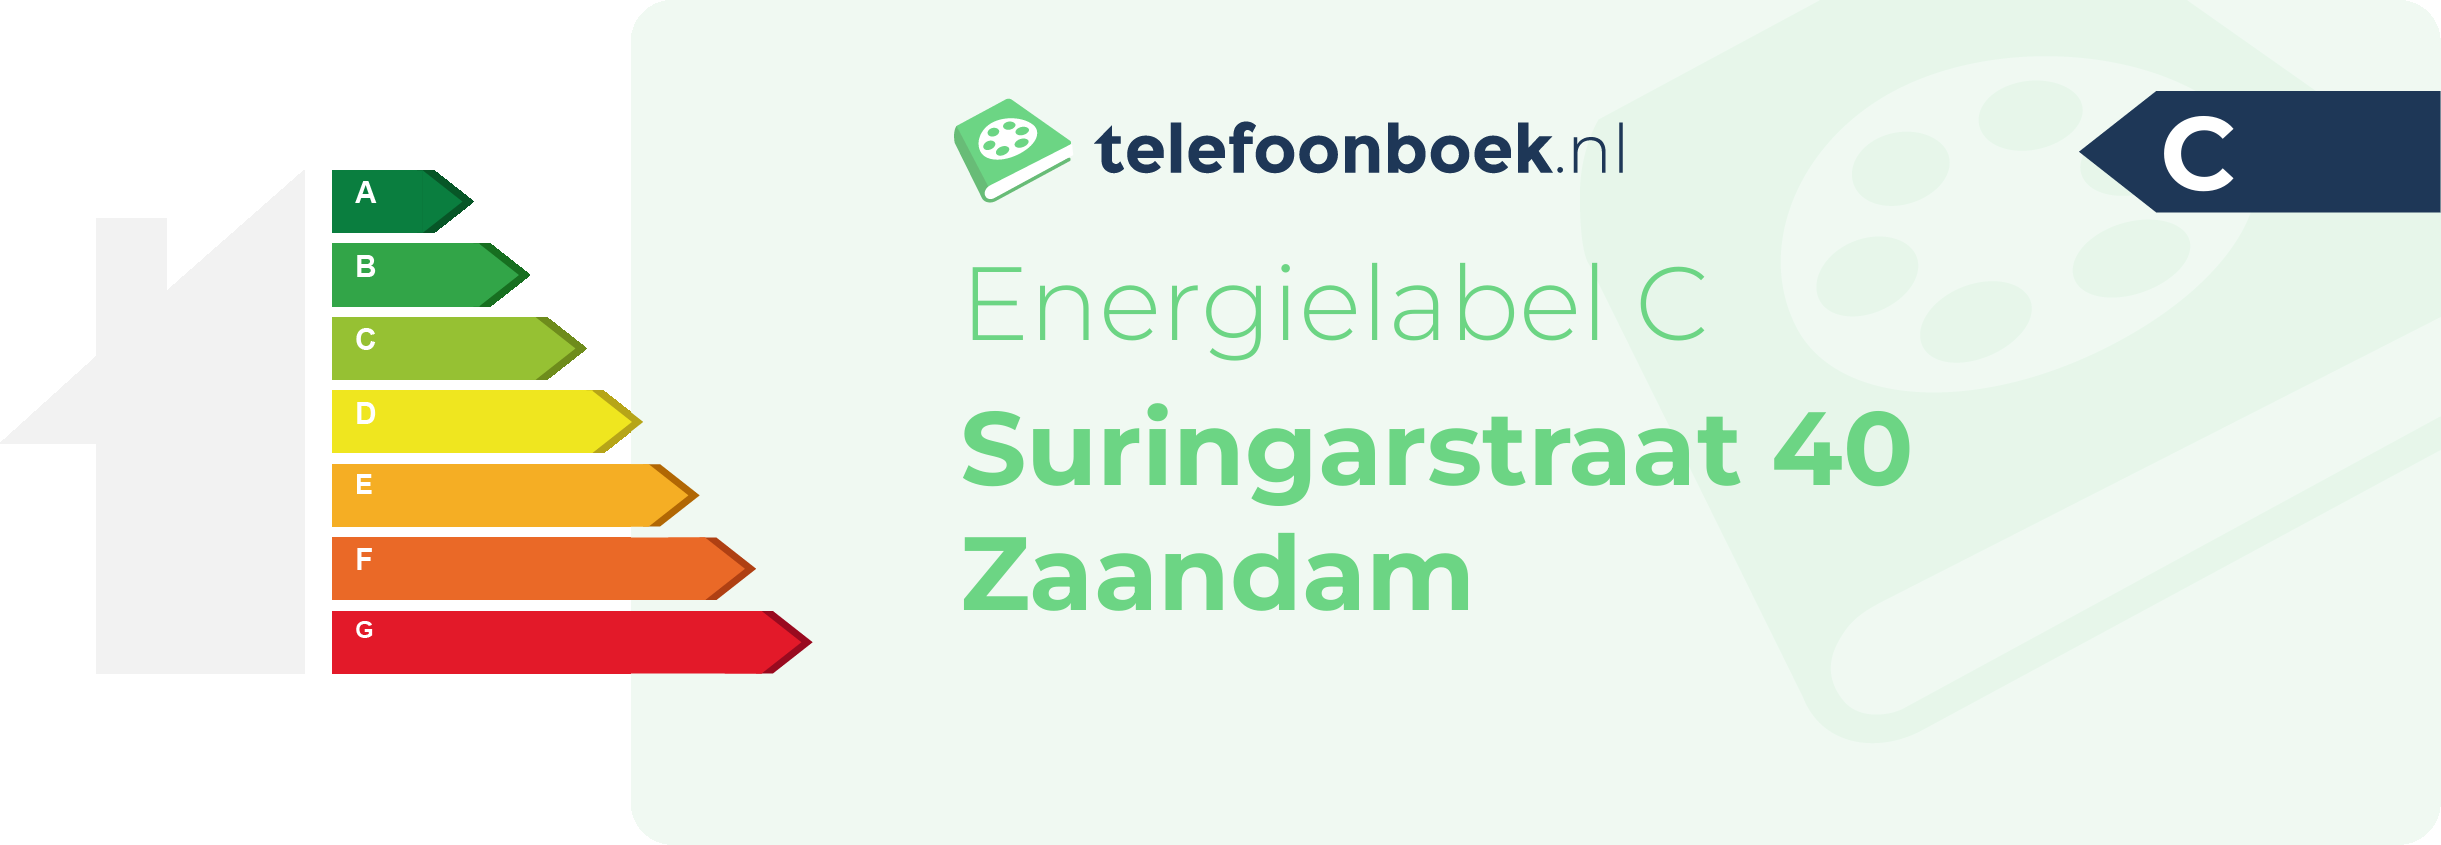 Energielabel Suringarstraat 40 Zaandam